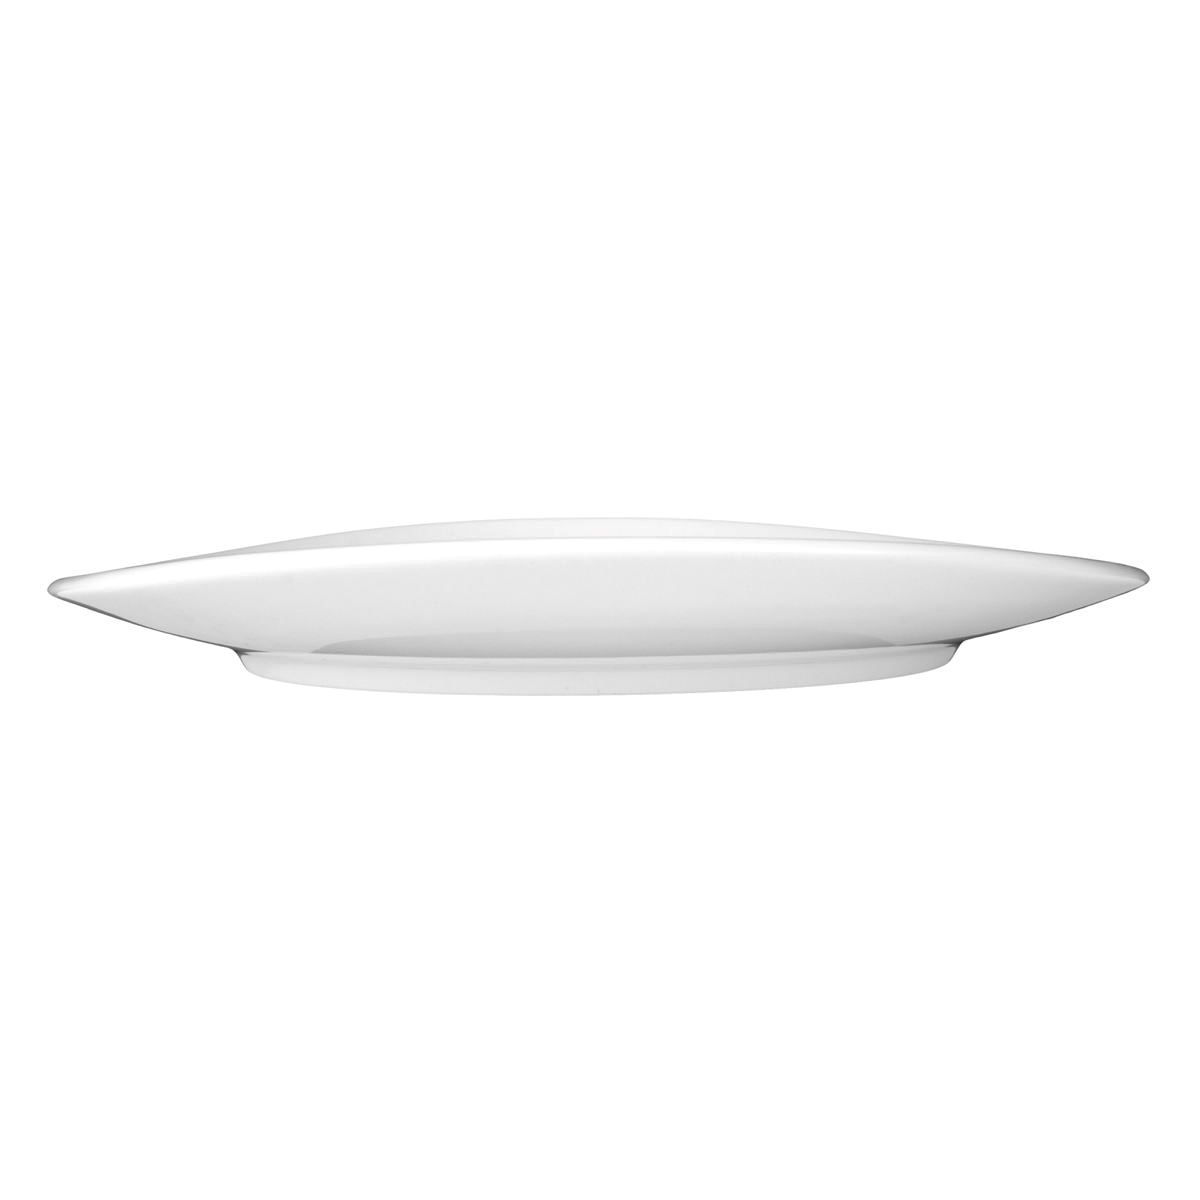 Teller oval 5195 - 25 cm - Serie Meran